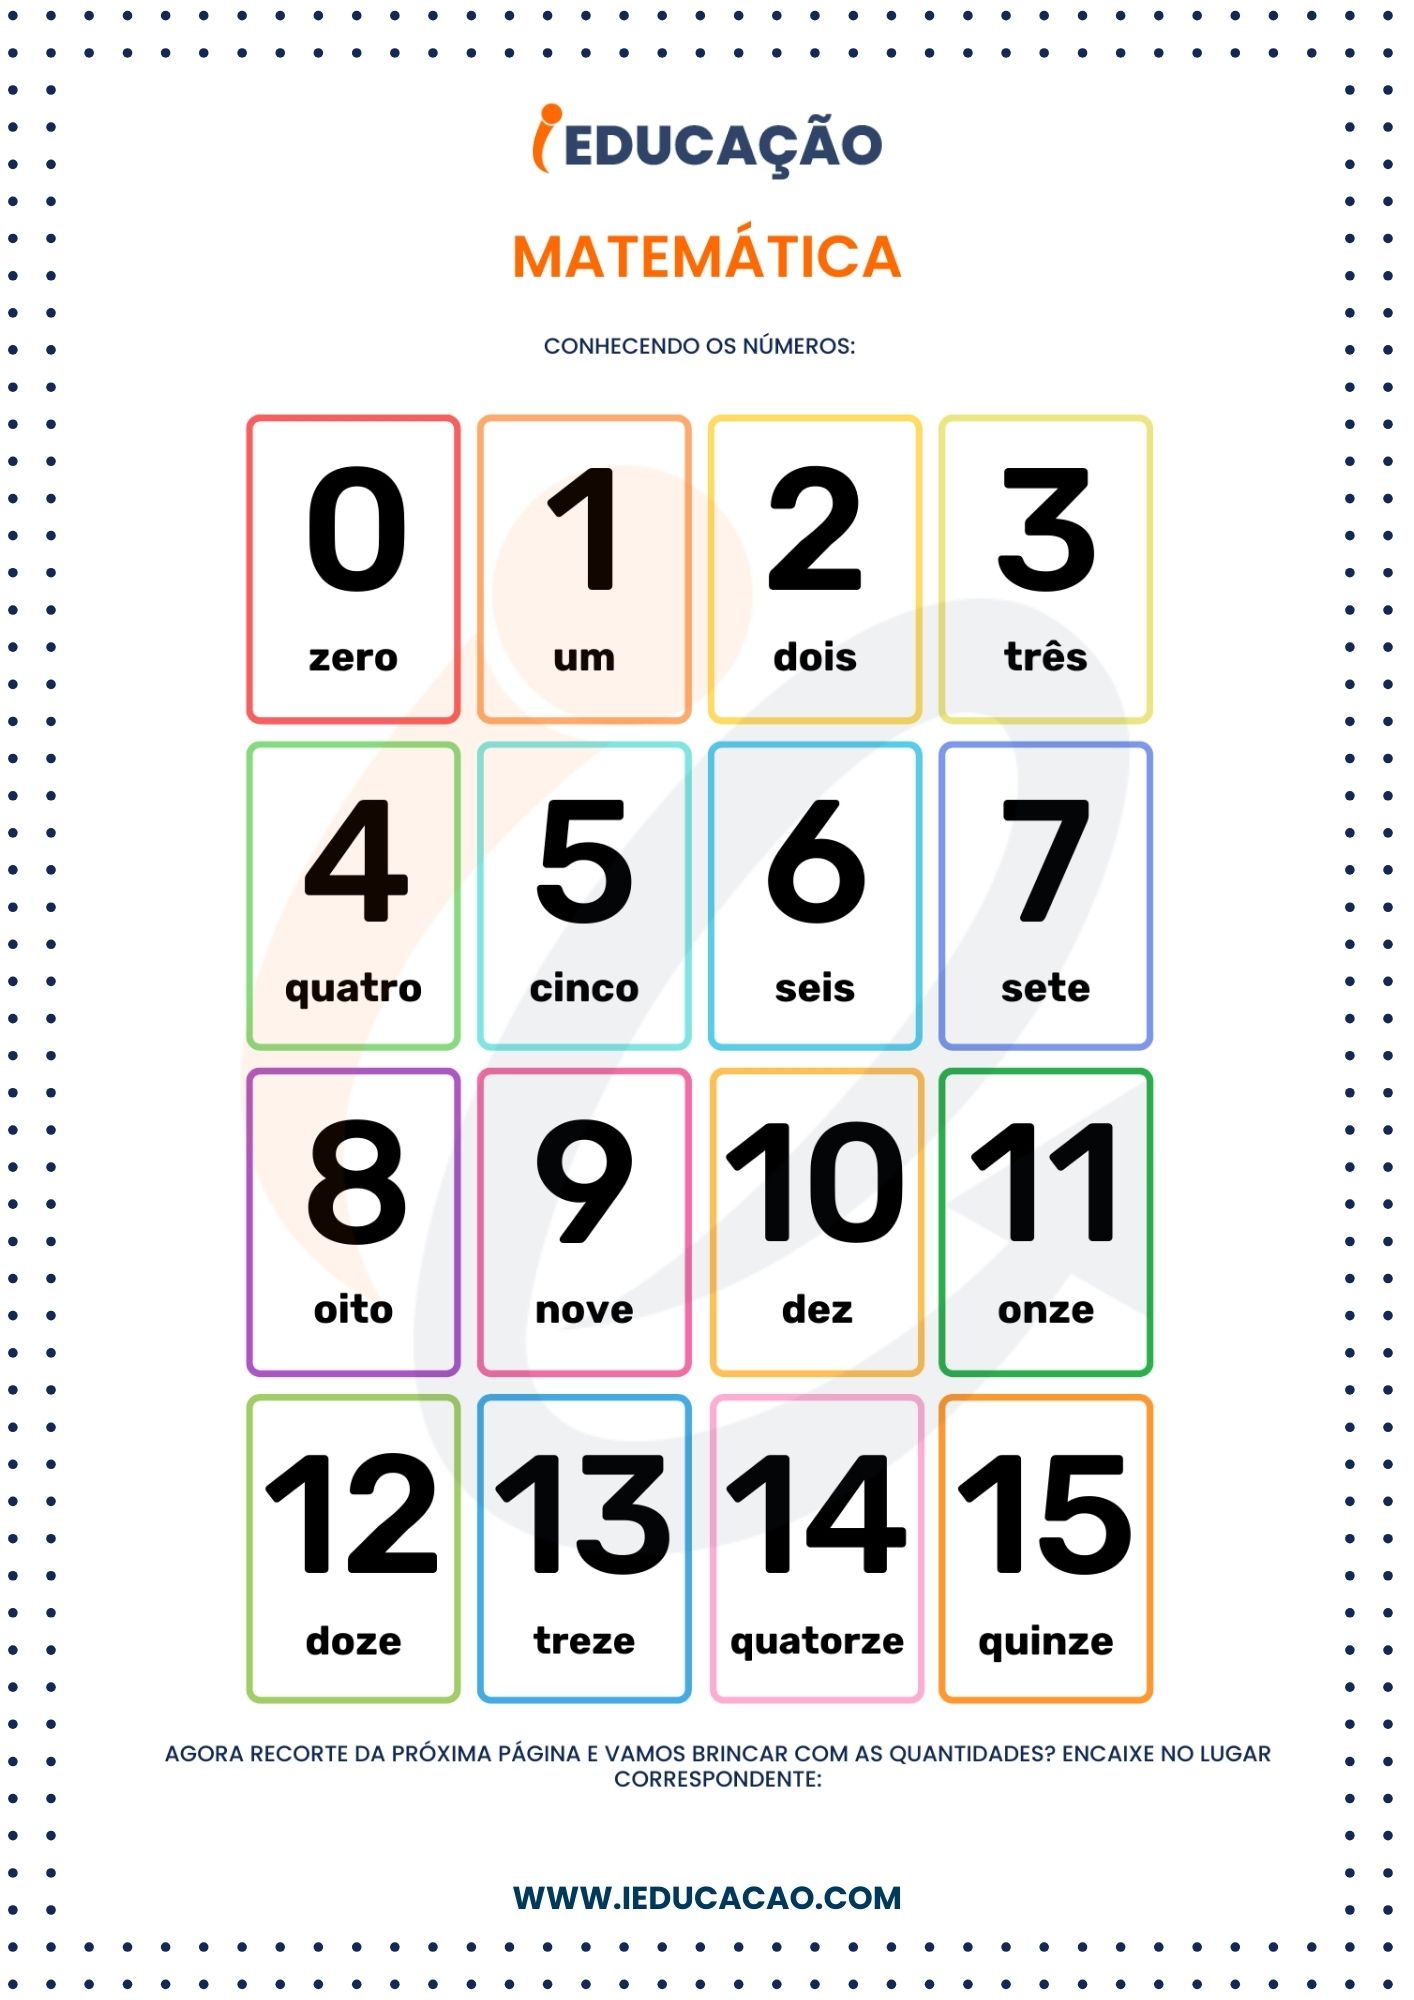 Atividades de Matemática 5 anos  - Atividades de matemática para Educação infantil - jogo matemático para crianças de 5 anos.jpg